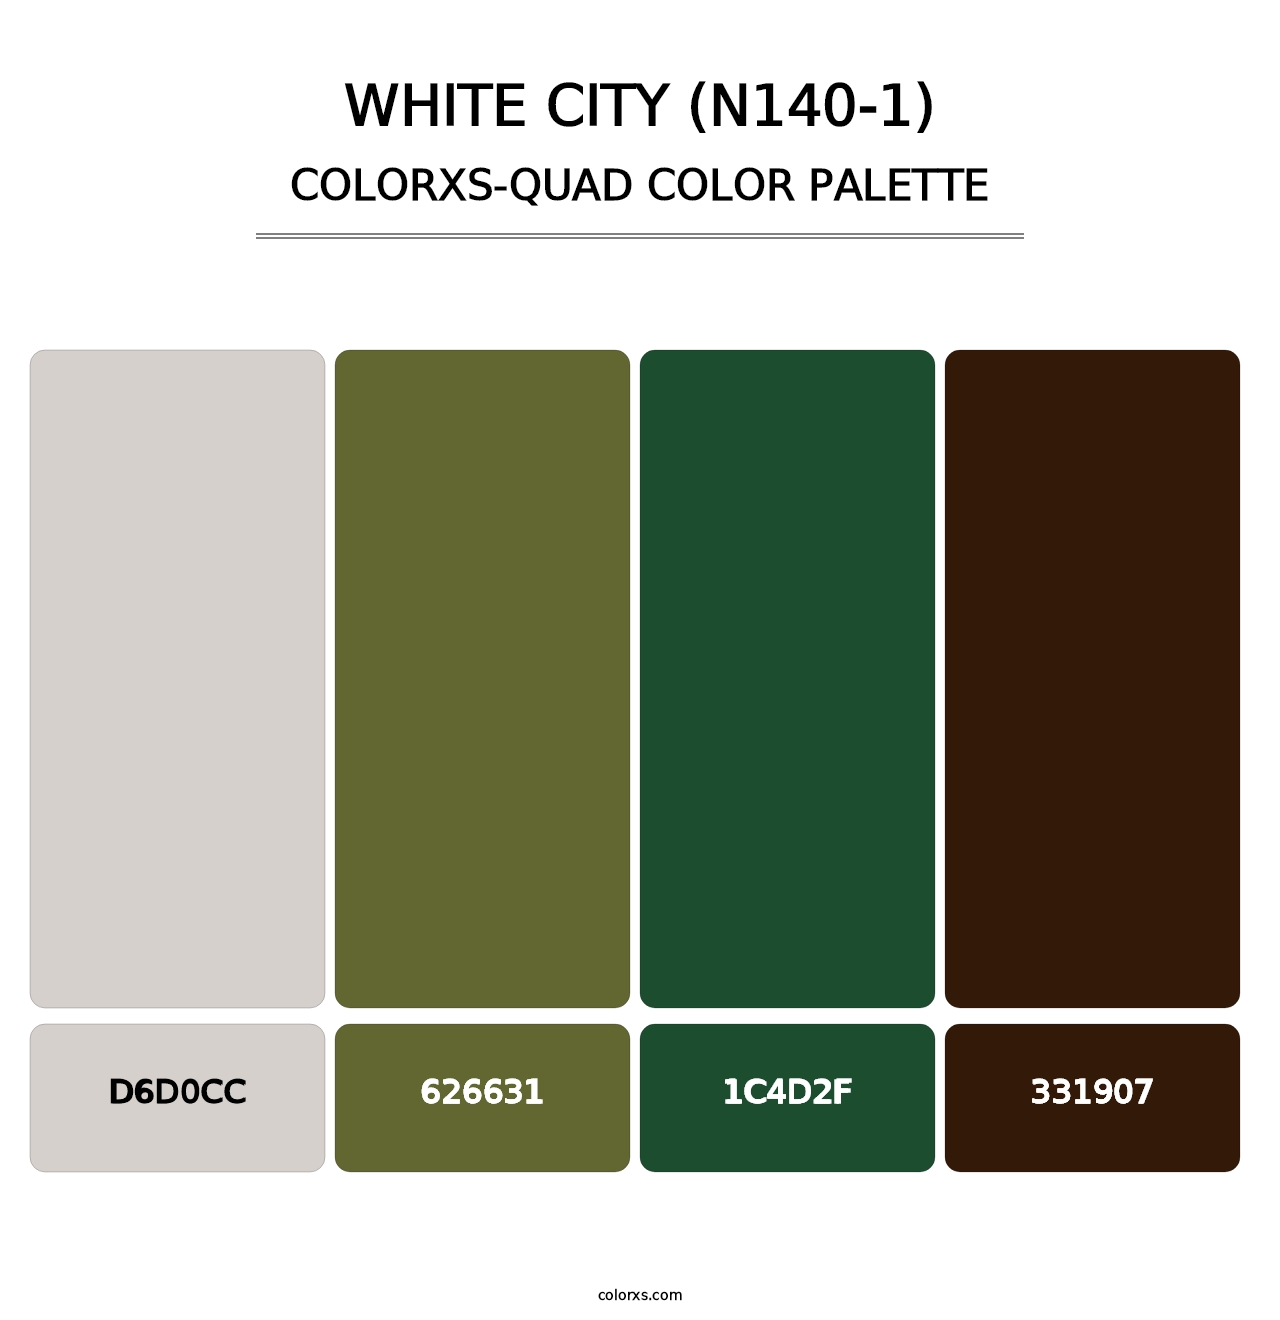 White City (N140-1) - Colorxs Quad Palette